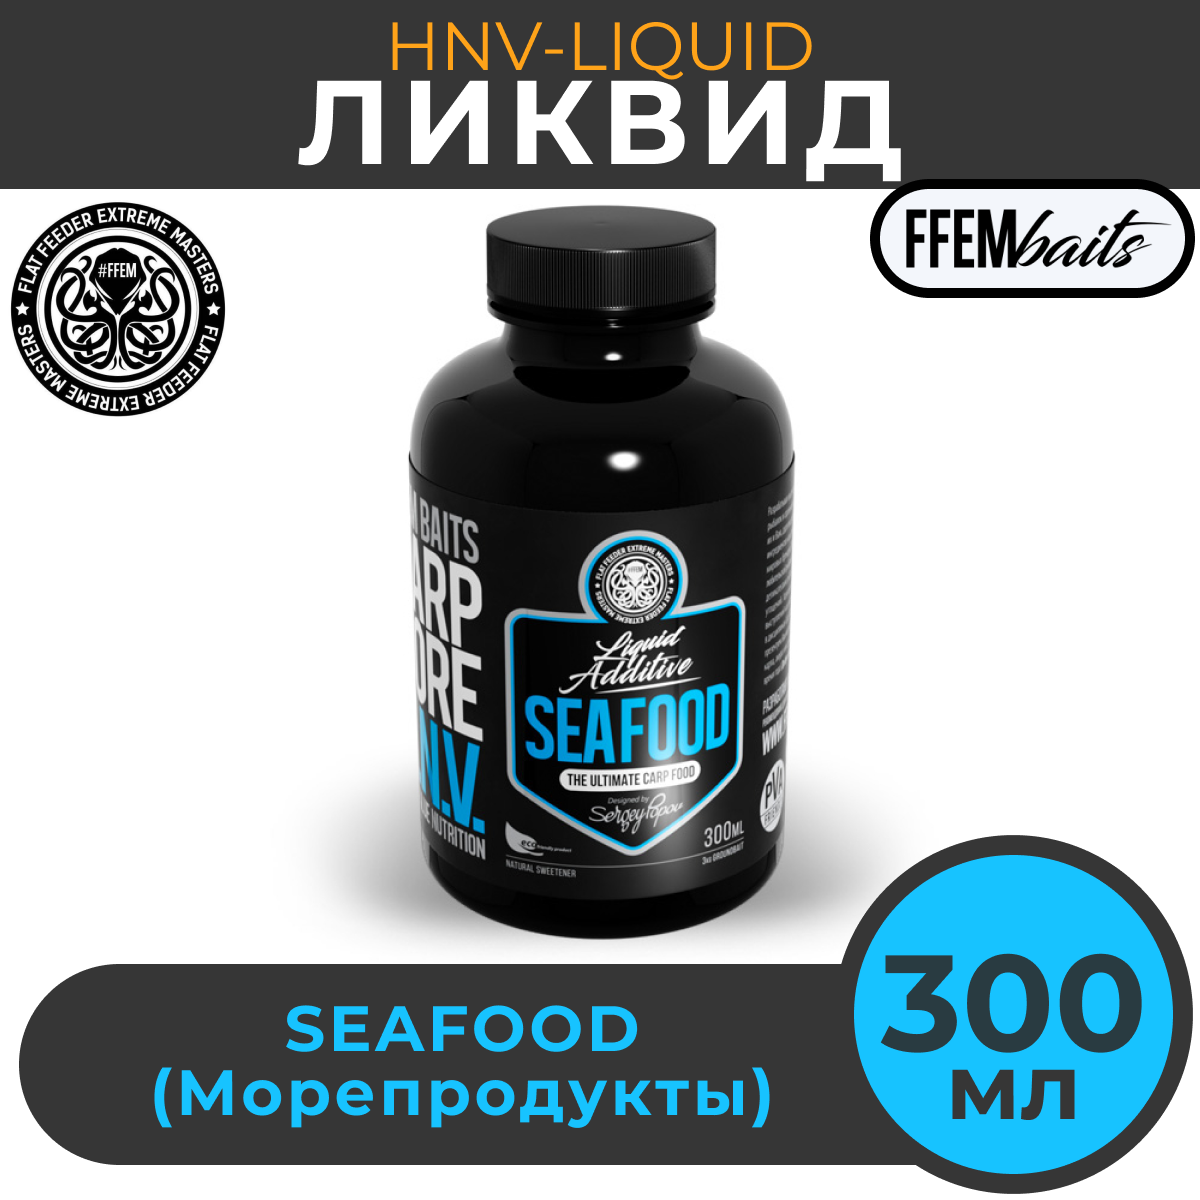 Ликвид FFEM Carp Core HNV-Liquid Seafood (Морепродукты) 300мл / активатор клёва / жидкое питание / ликвид / бустер